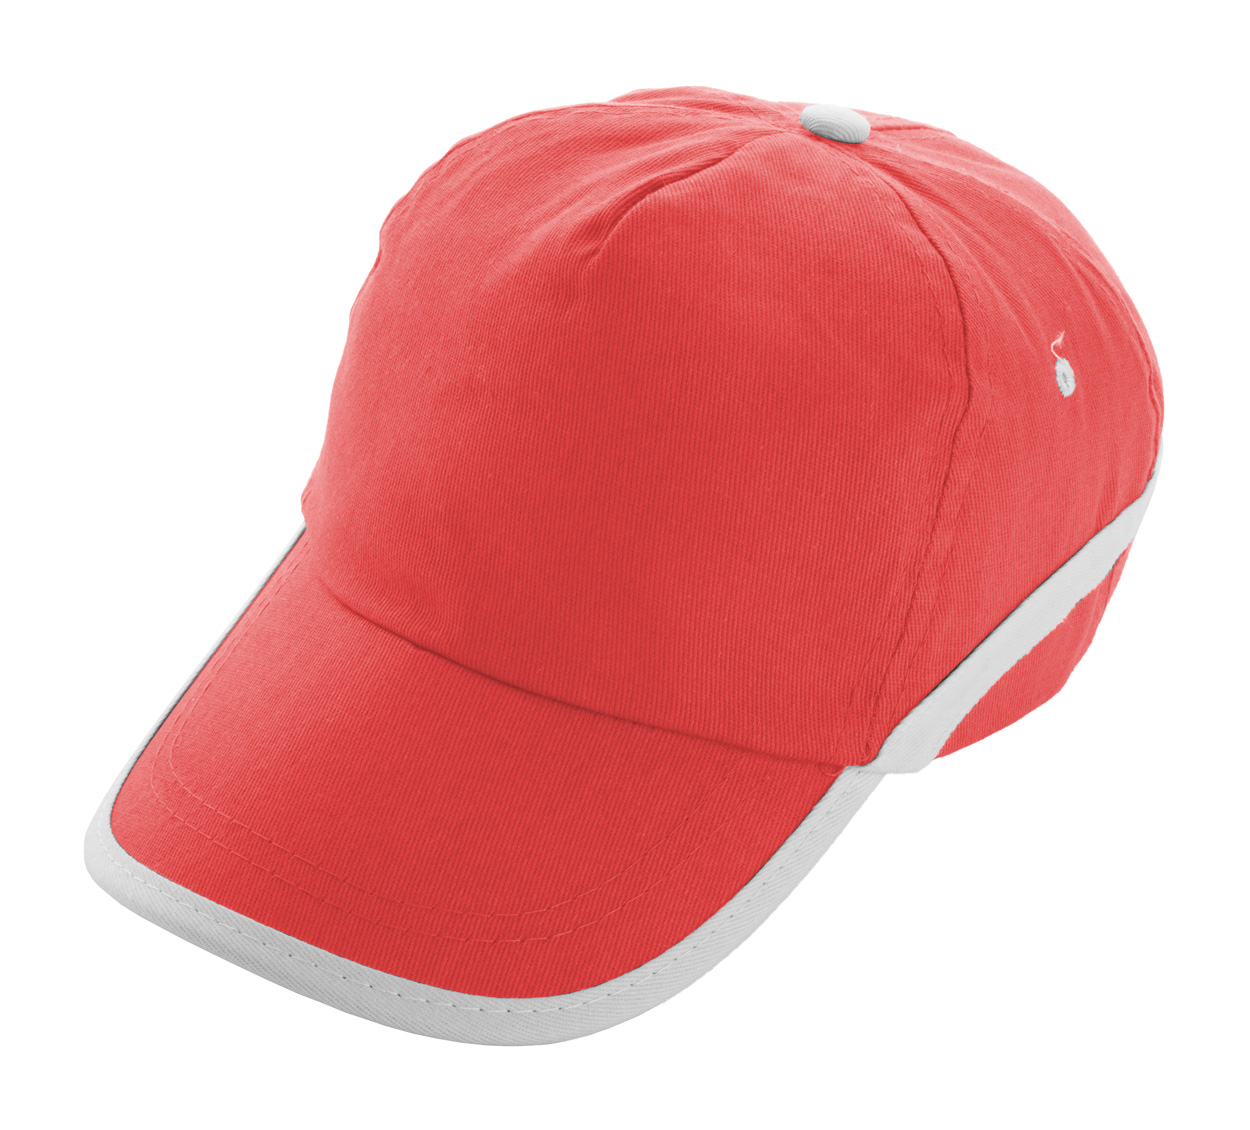 Line baseball kapa - šilterica, crveno bijele boje s tiskom 